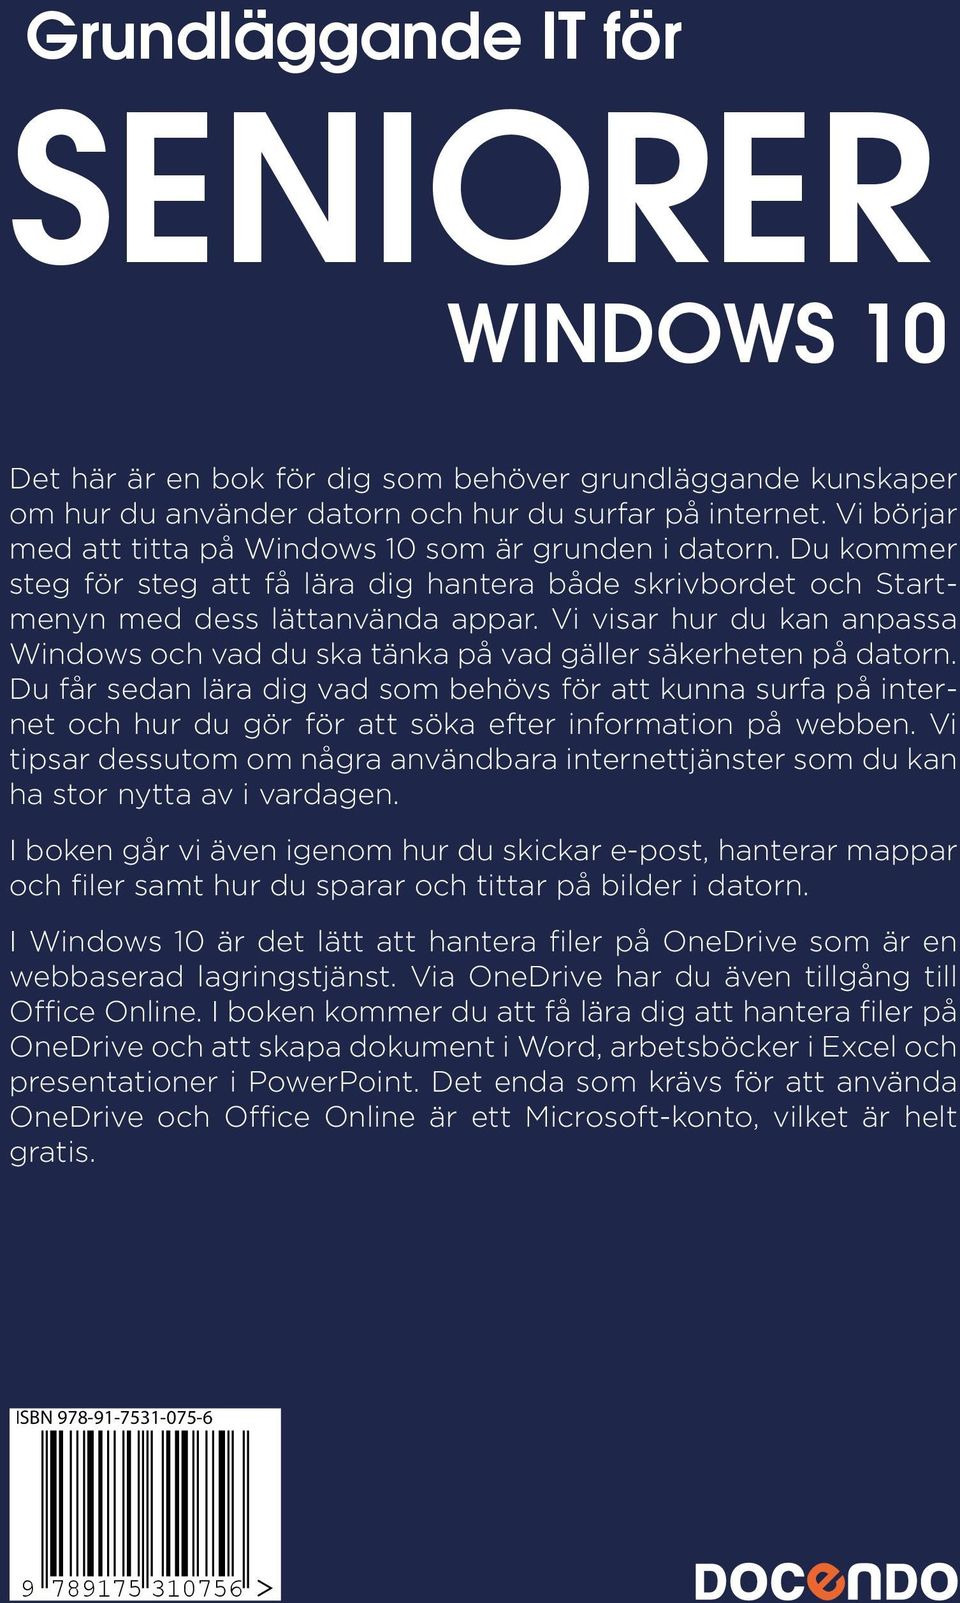 Vi visar hur du kan anpassa Windows och vad du ska tänka på vad gäller säkerheten på datorn.